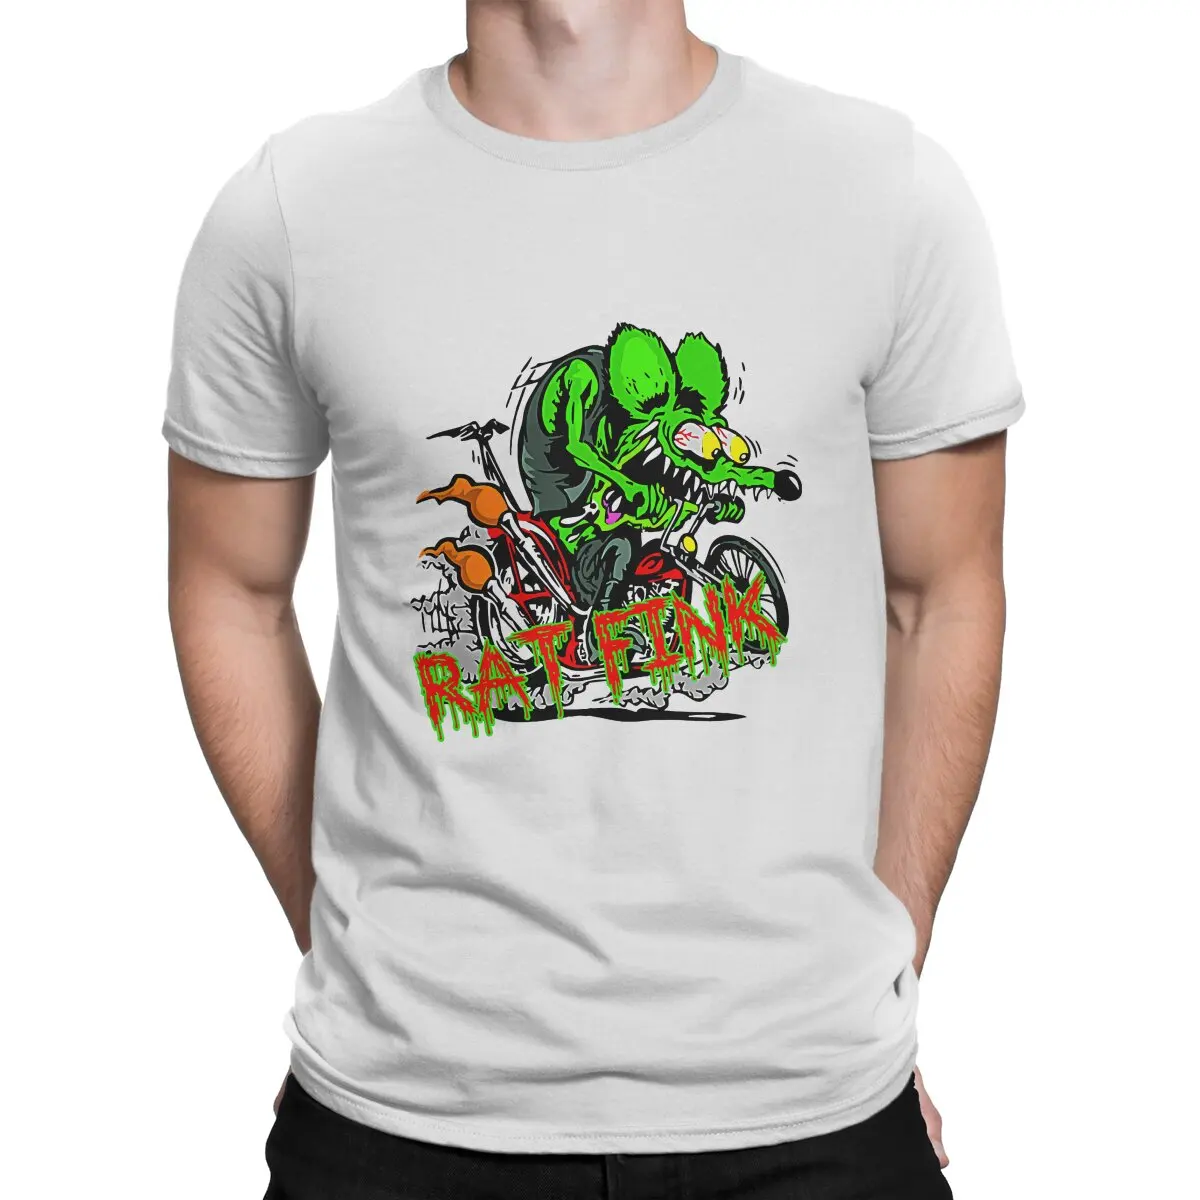 

Новейшая футболка с персонажами мультфильма «Сказки Крысы», Мужская футболка с круглым вырезом и злом, футболка из чистого хлопка, отличительный подарок, одежда